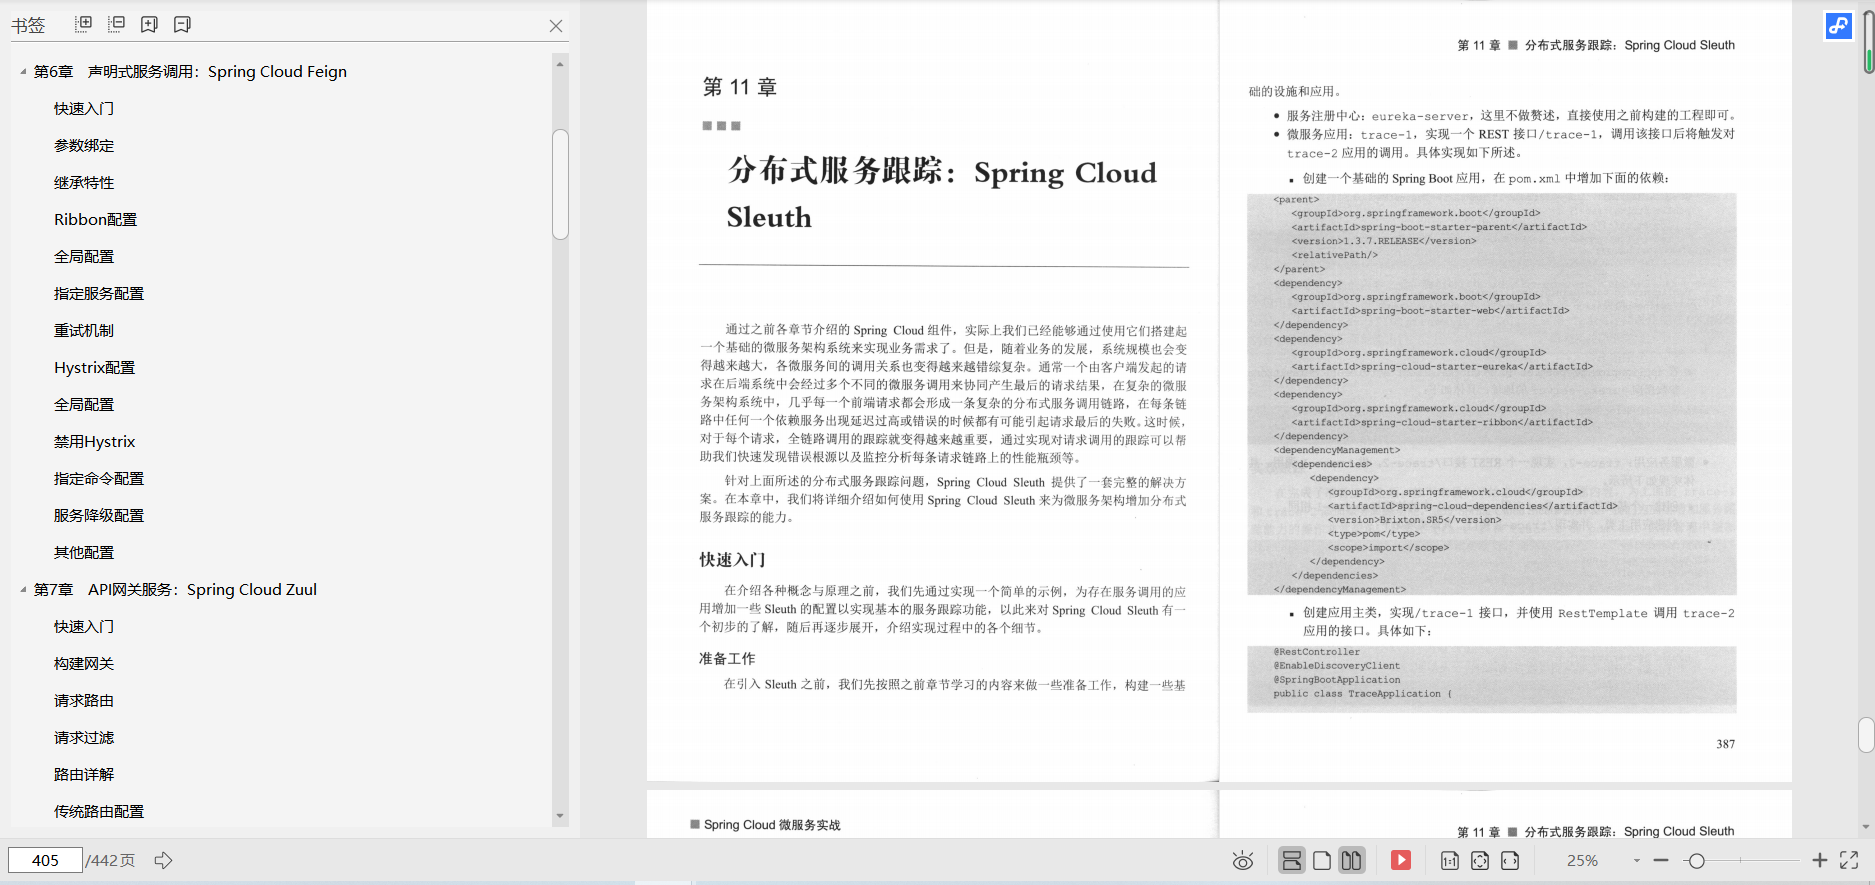 愛、愛、Spring Cloud Alibabaの内部マイクロサービスアーキテクチャノートは本当に素晴らしい